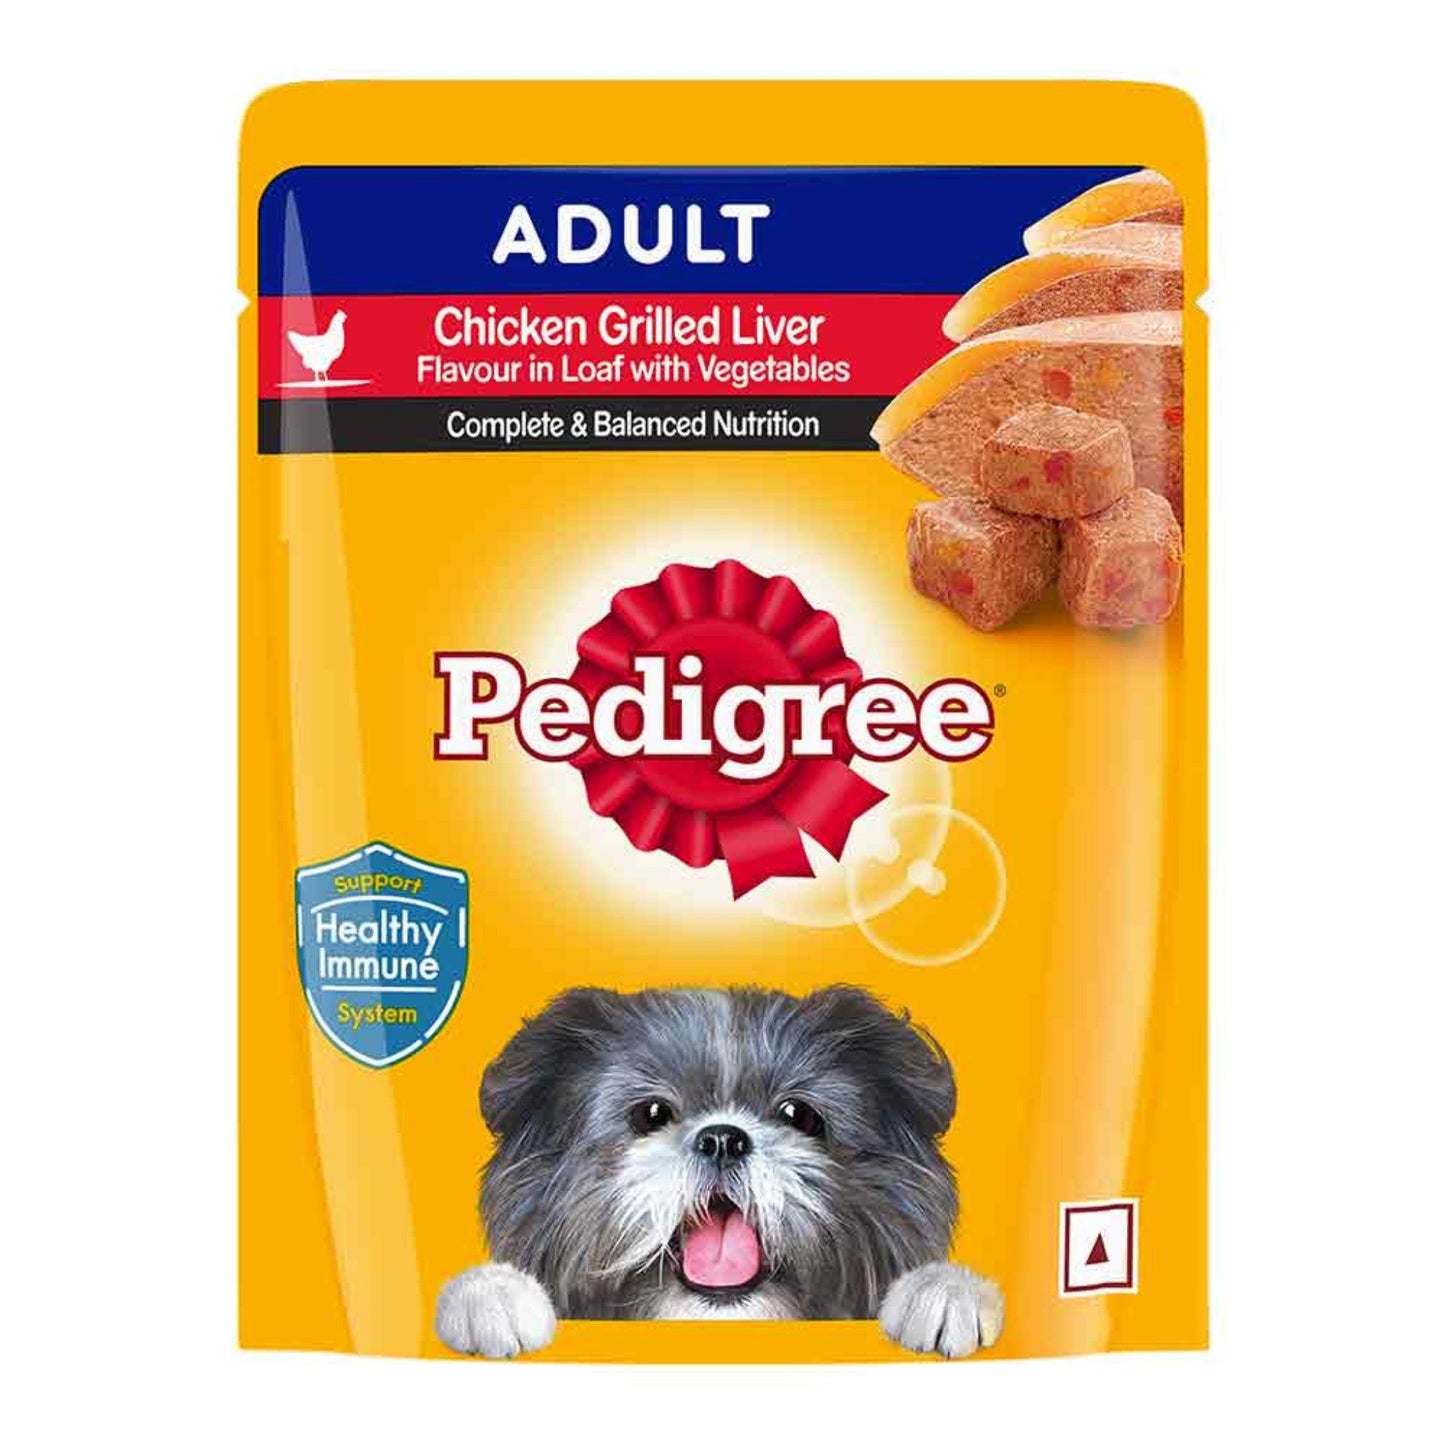 Pedigree Adult Dog Wet Food, Chicken Grilled Liver 70gm, Pack of 30